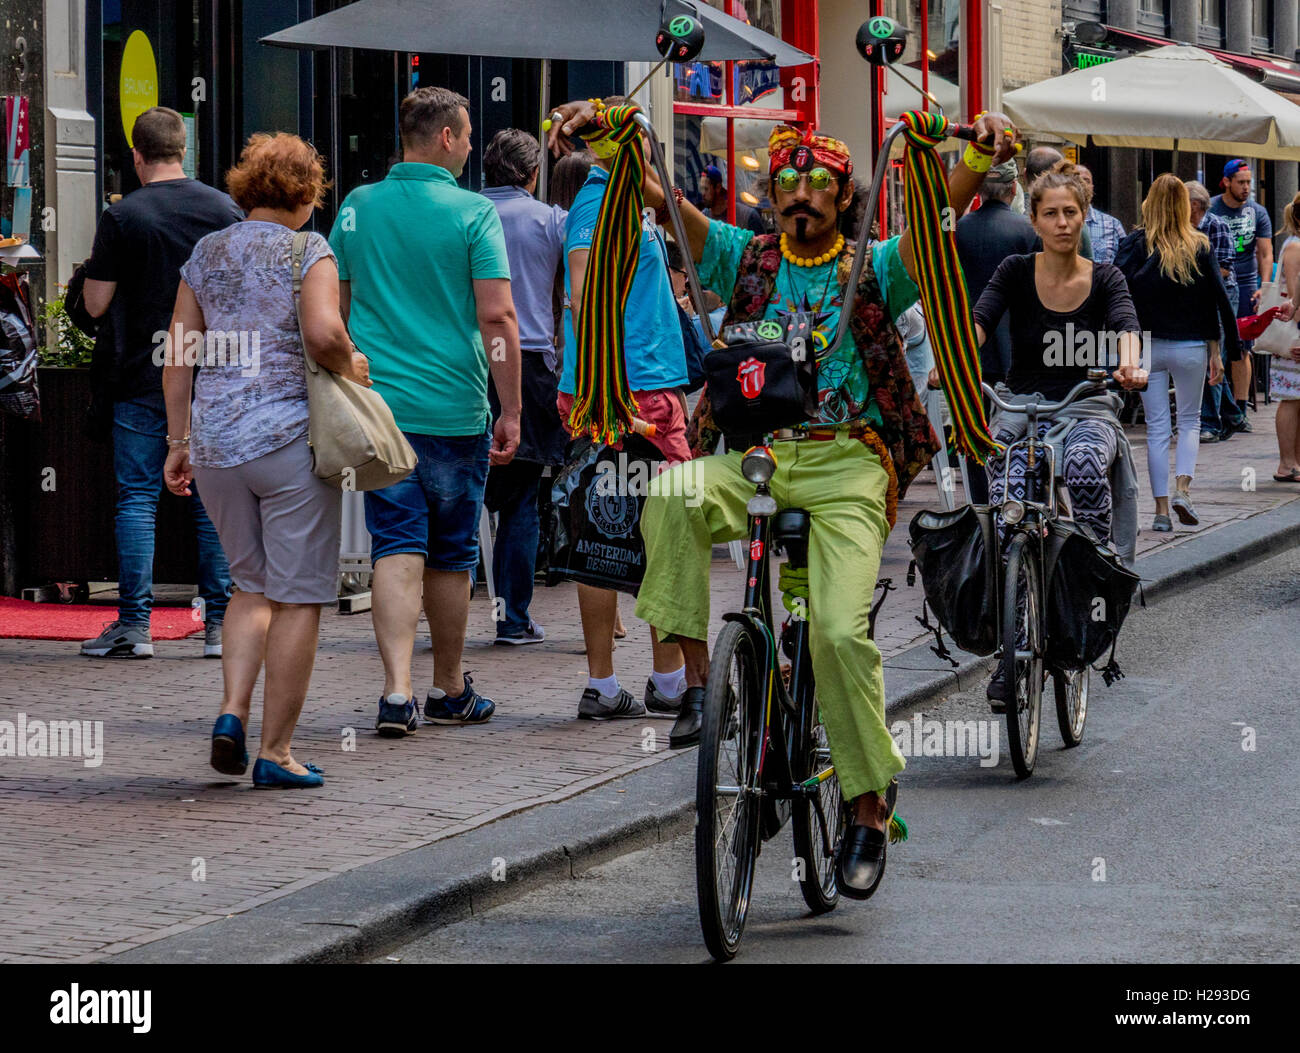 Bizarr gekleideten Radfahrer in der Stadt Amsterdam Radfahrer sind ermutigt durch eine sichere Straßen-System einschließlich der Radwege Stockfoto